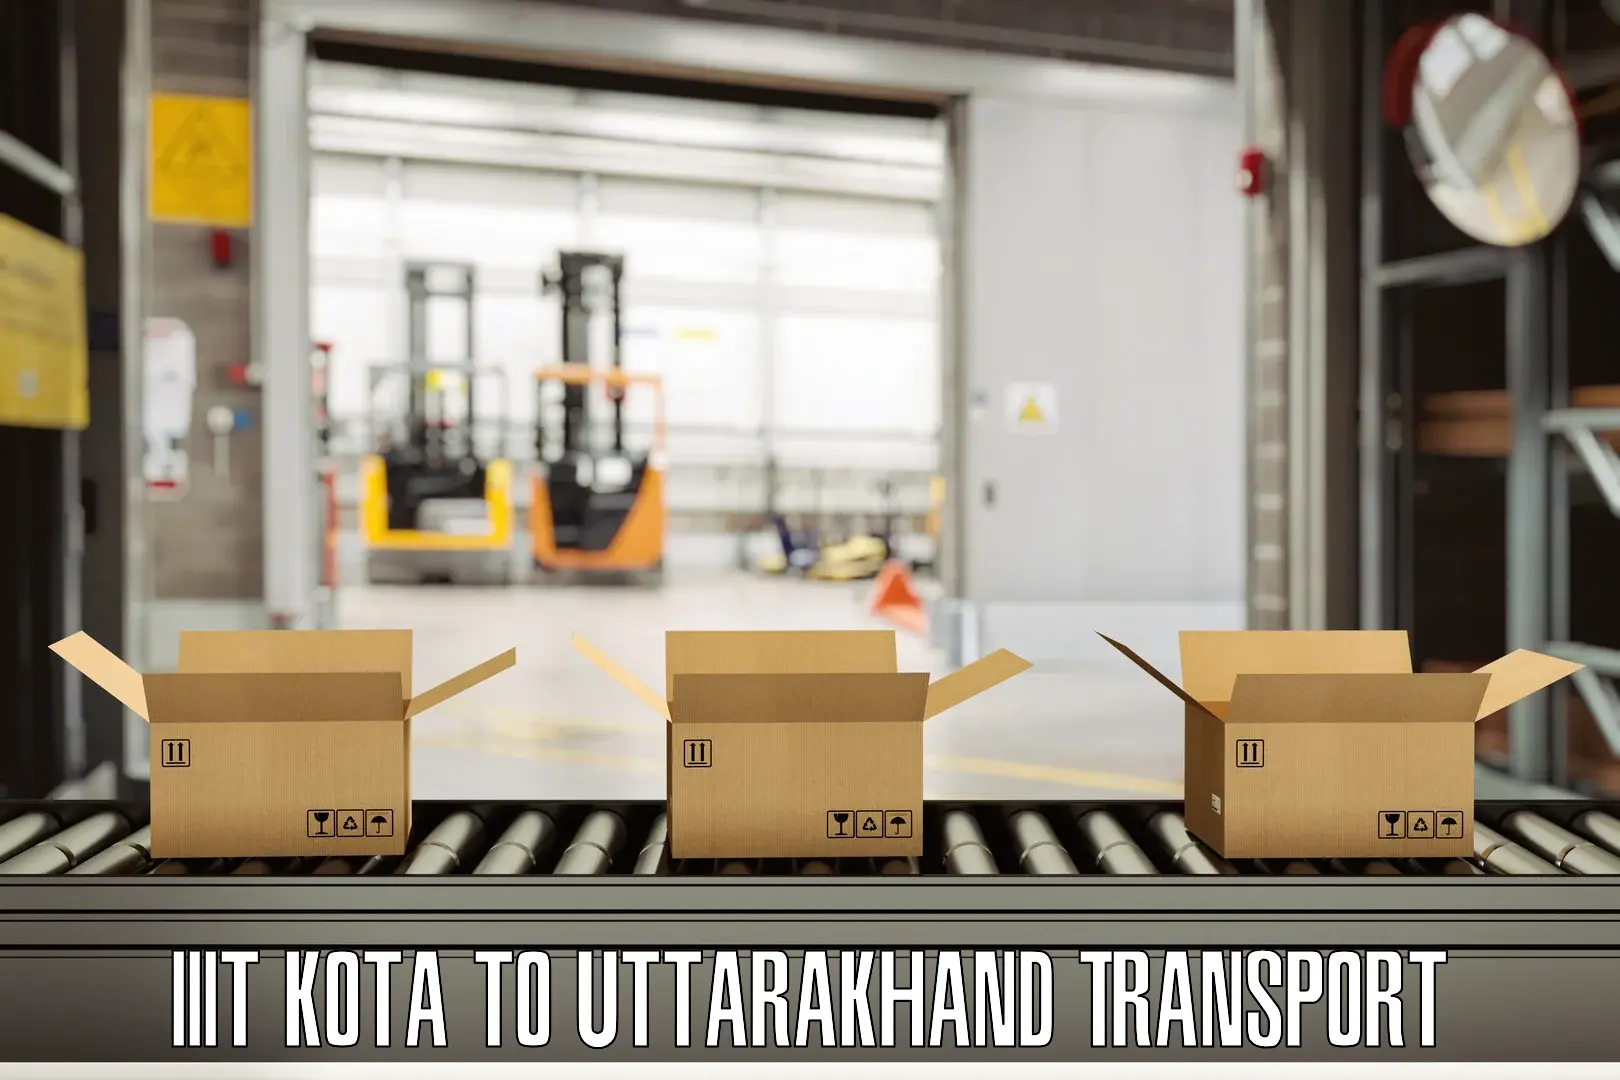 Transport in sharing IIIT Kota to Pithoragarh